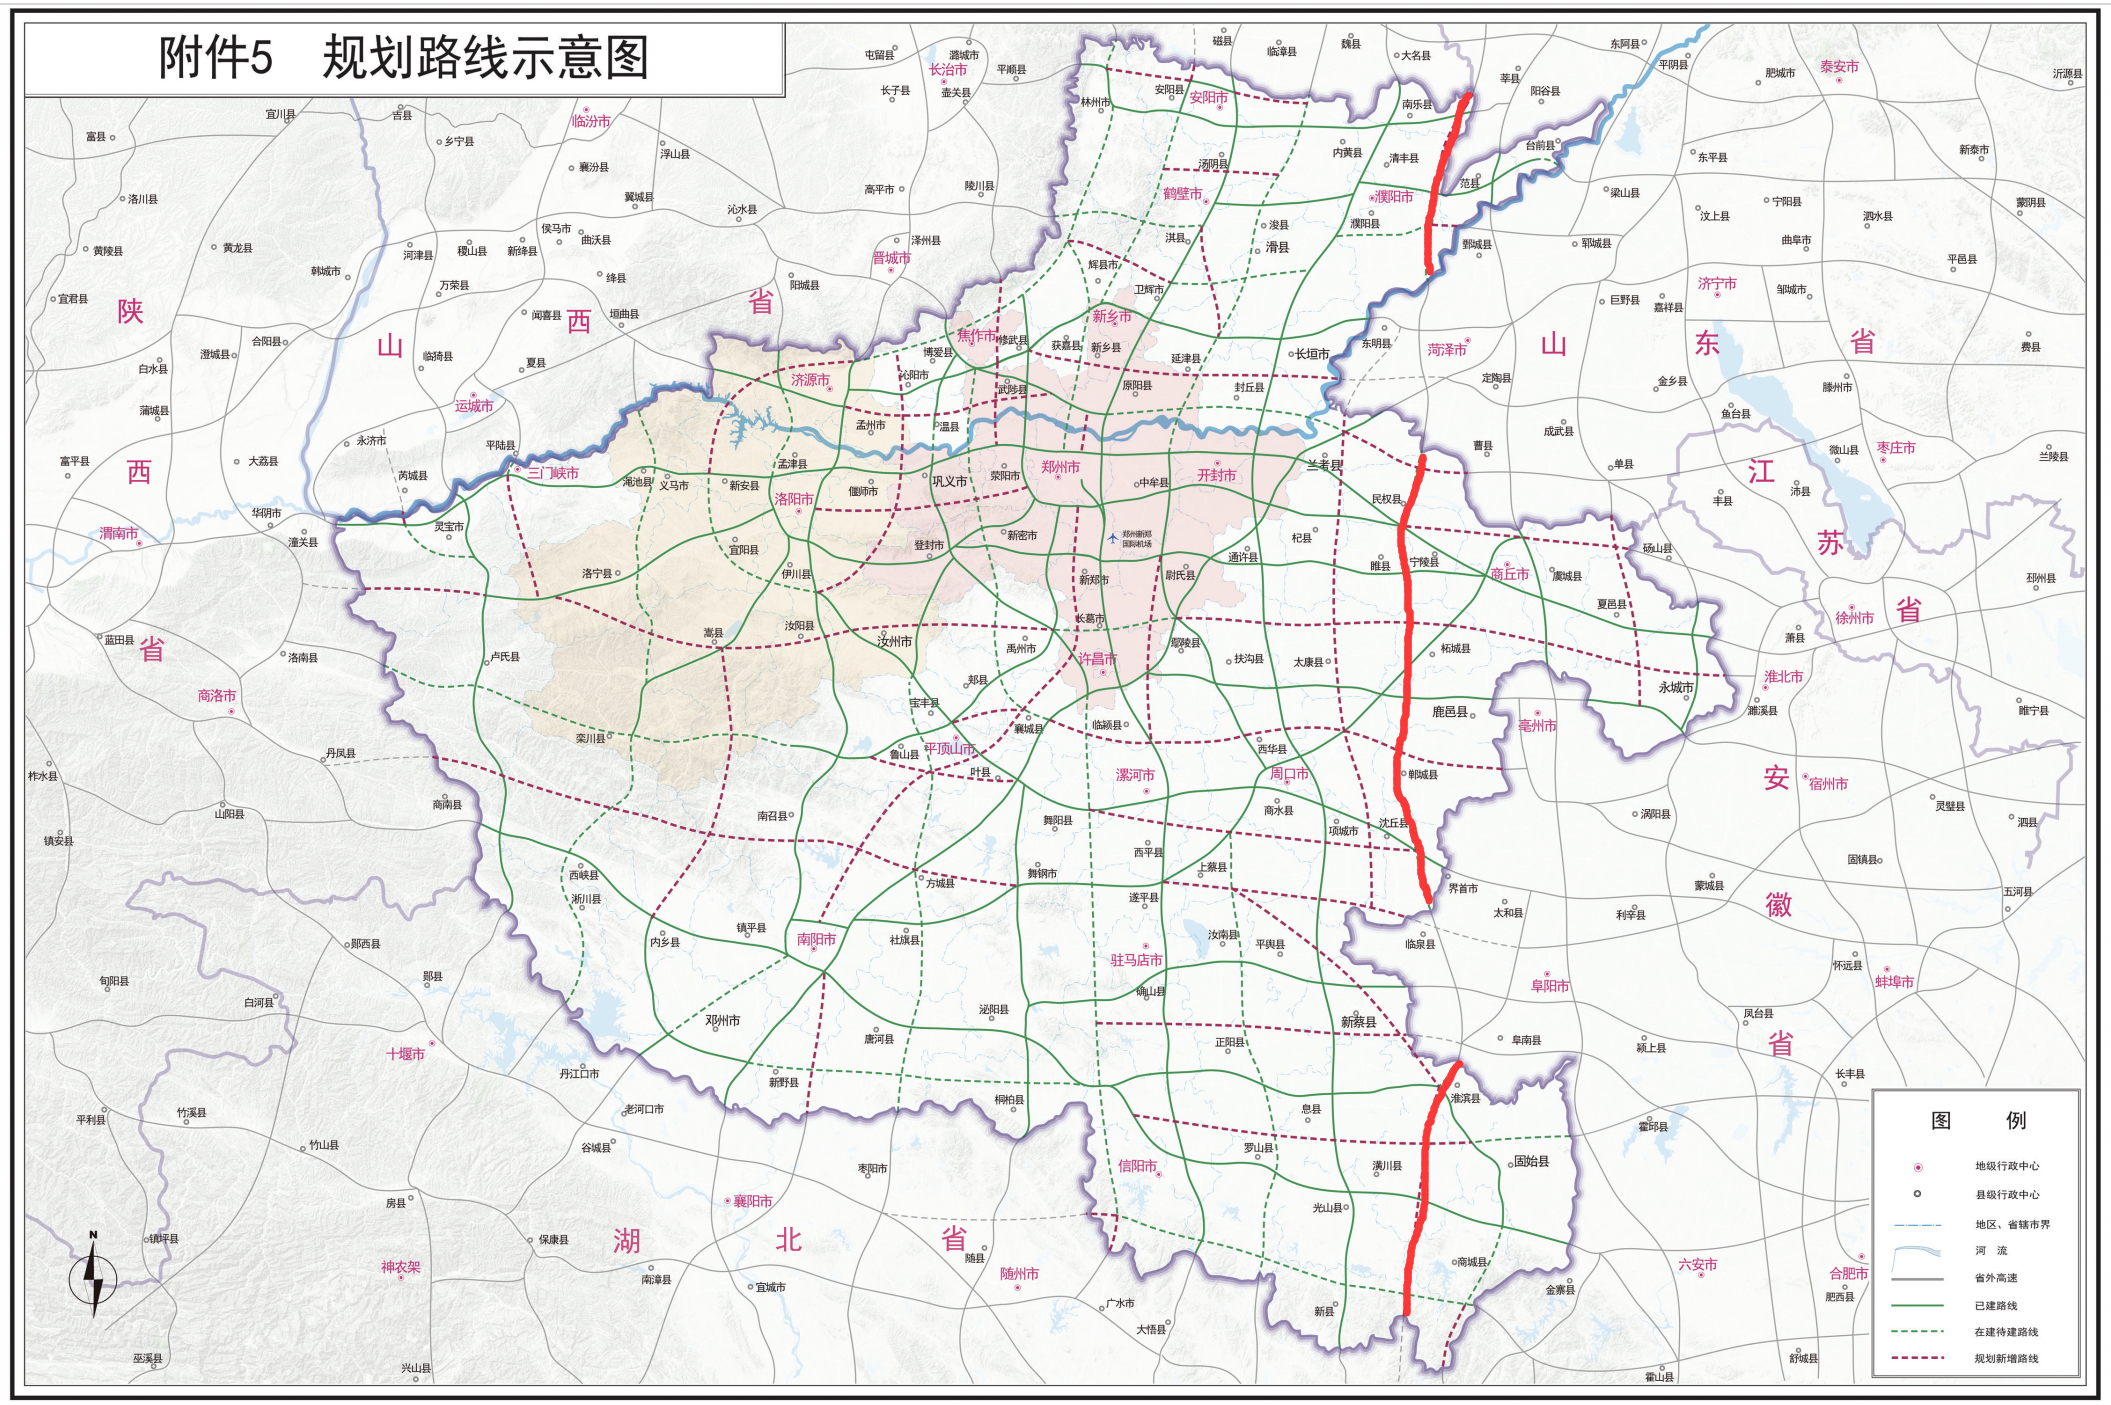 濮陽—陽新高速公路(中國河南省、山東省、安徽省、湖北省境內高速公路)